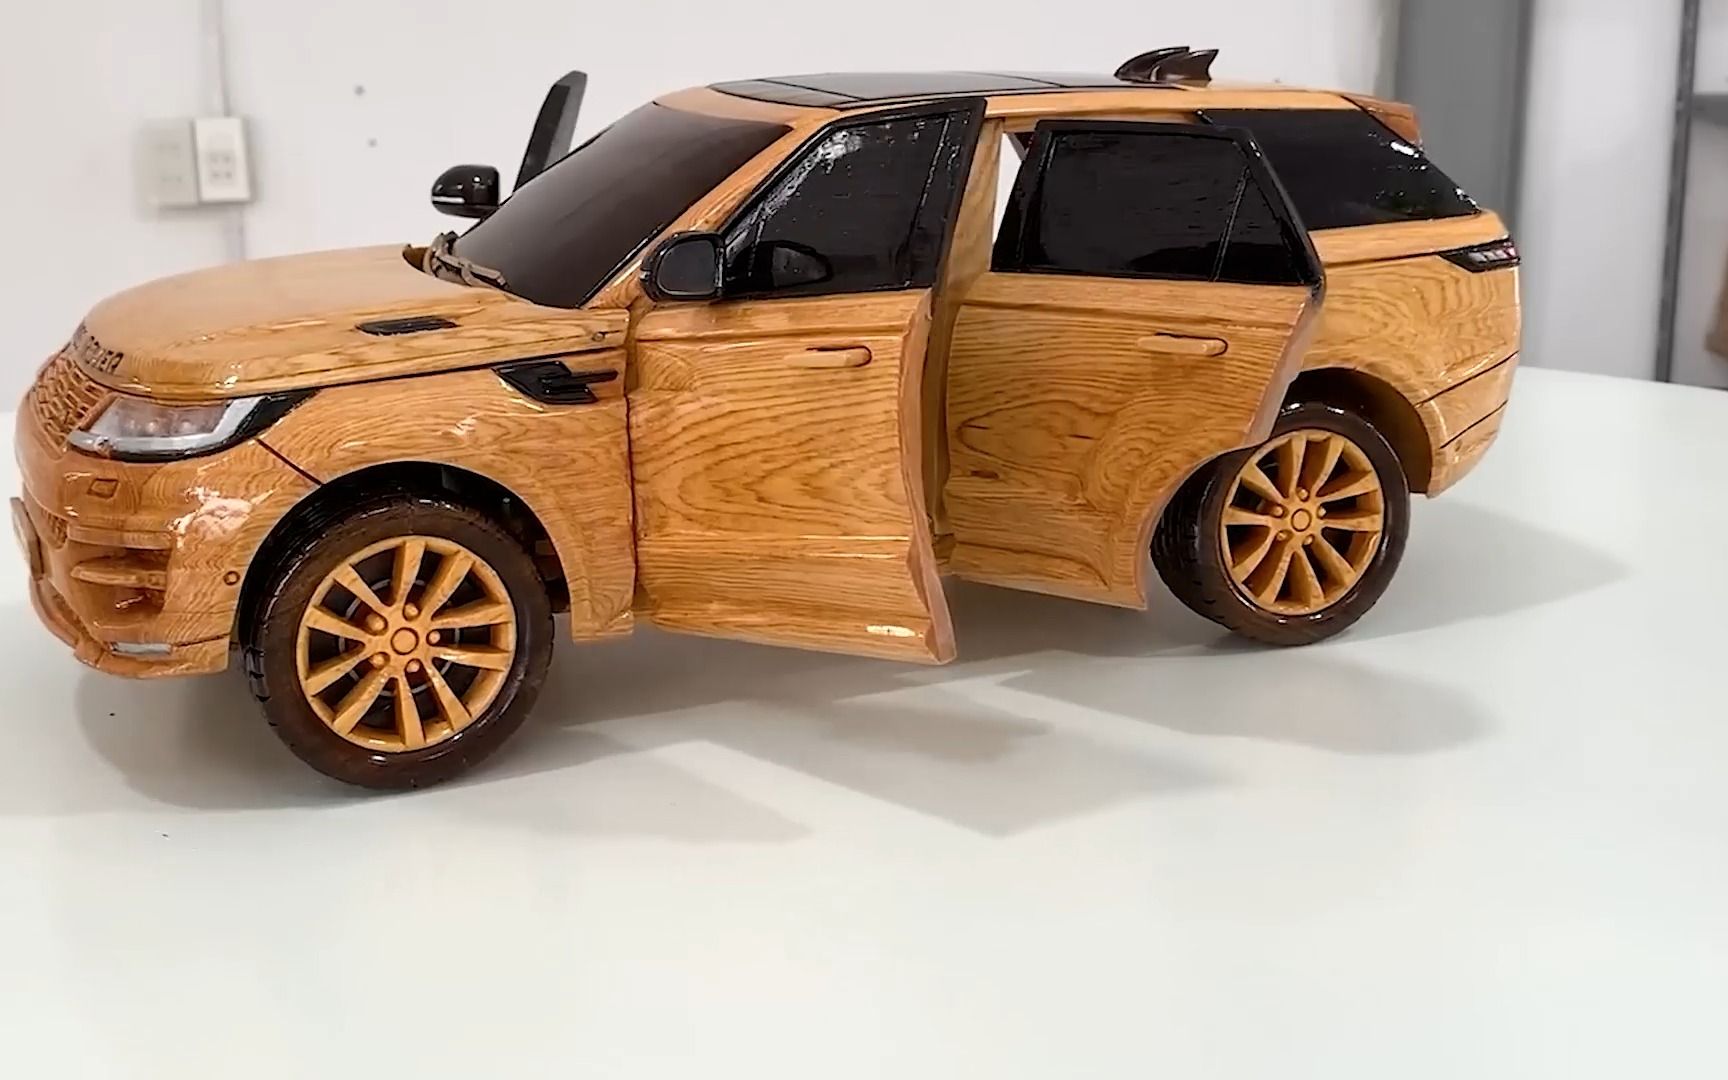 自制简易木头汽车图片